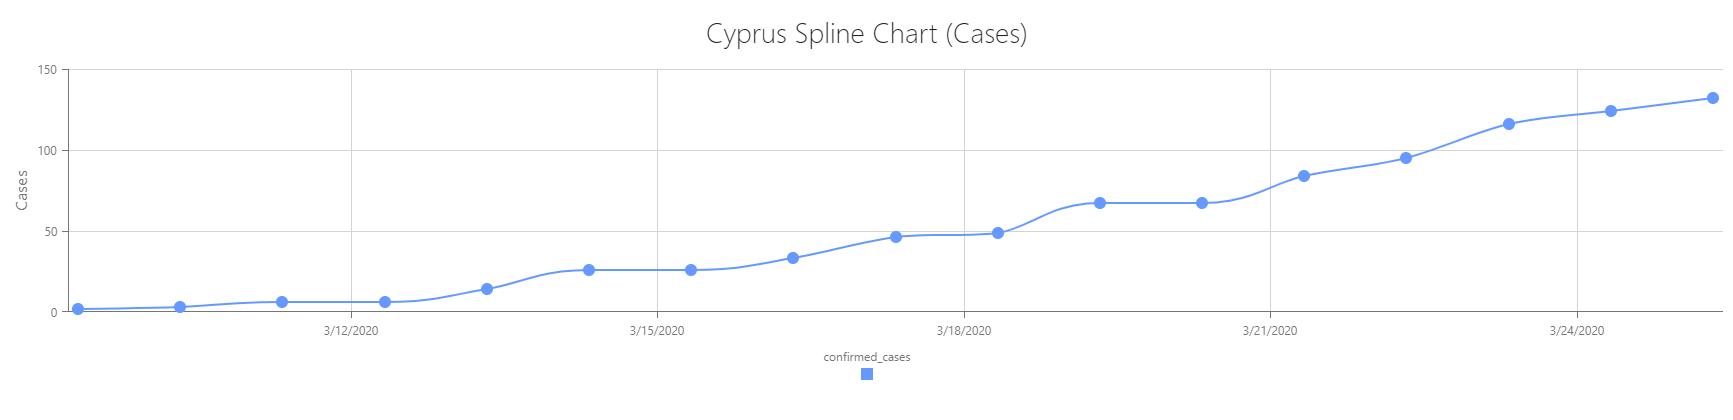 31 κρούσματα και πάνω από 100 άτομα σε καραντίνα. Έκτακτα μέτρα και επιδόματα Κορονοϊός & Κύπρος: 662 κρούσματα και κατάσταση εκτάκτου ανάγκης